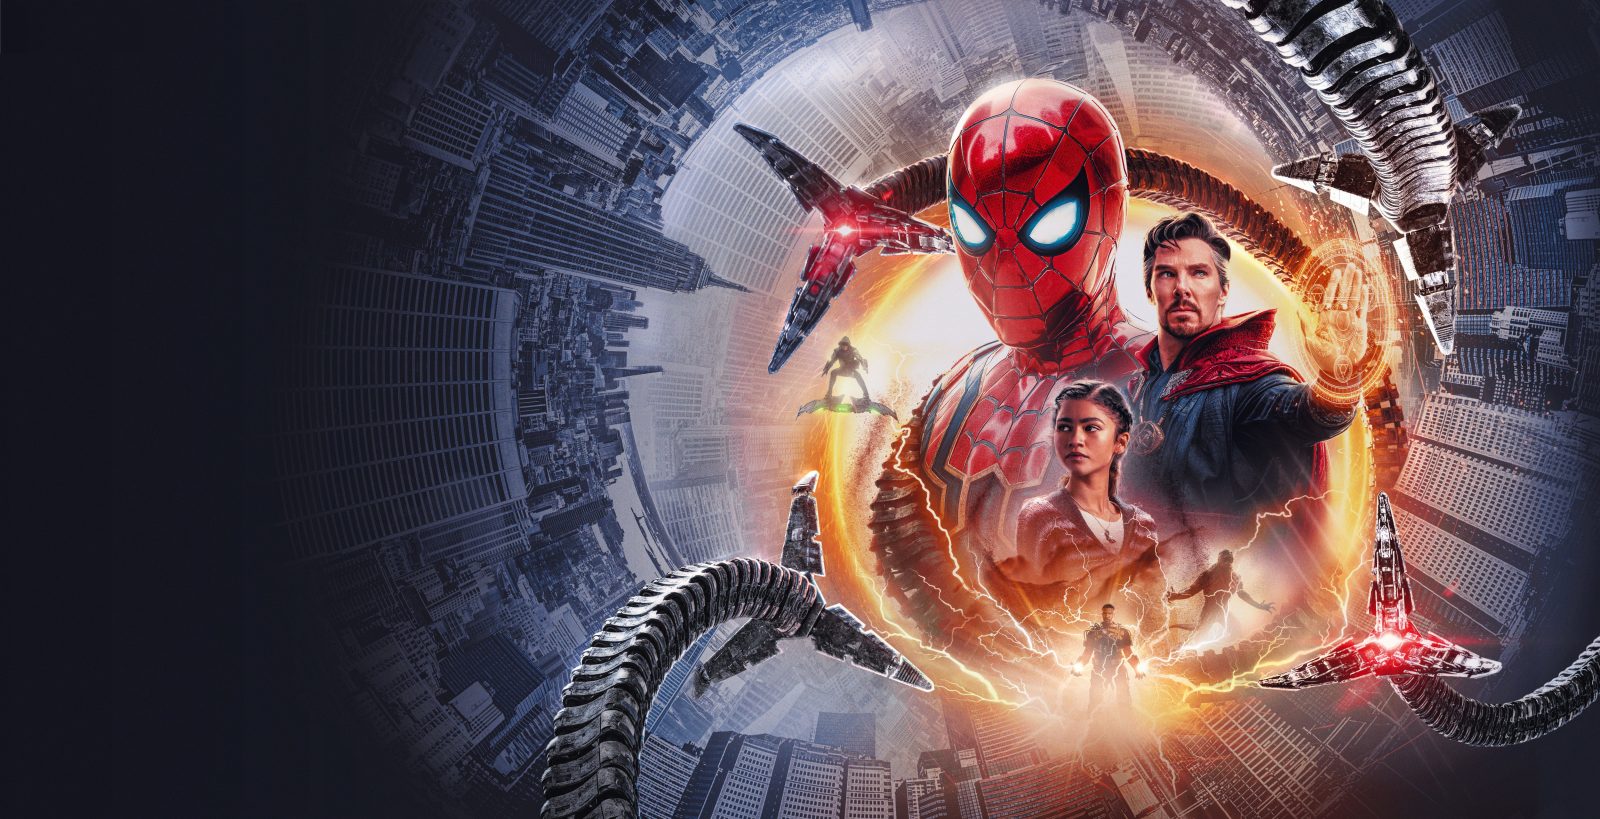 Box Office Italia - Spider-Man: No Way Home stravince con oltre 8 milioni